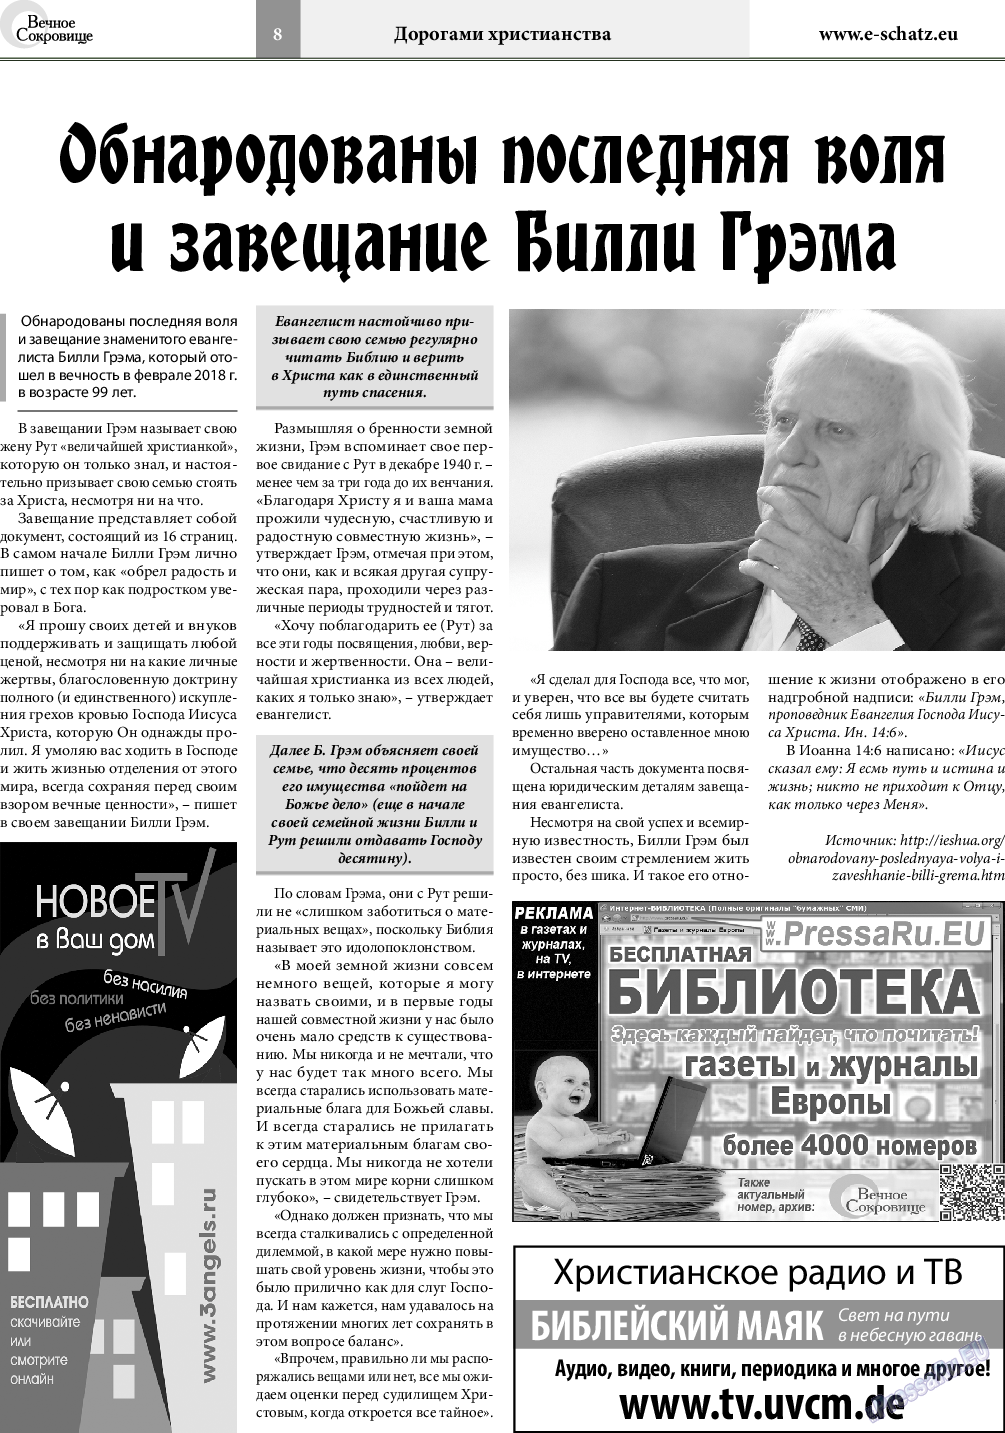 Вечное сокровище (газета). 2018 год, номер 4, стр. 8